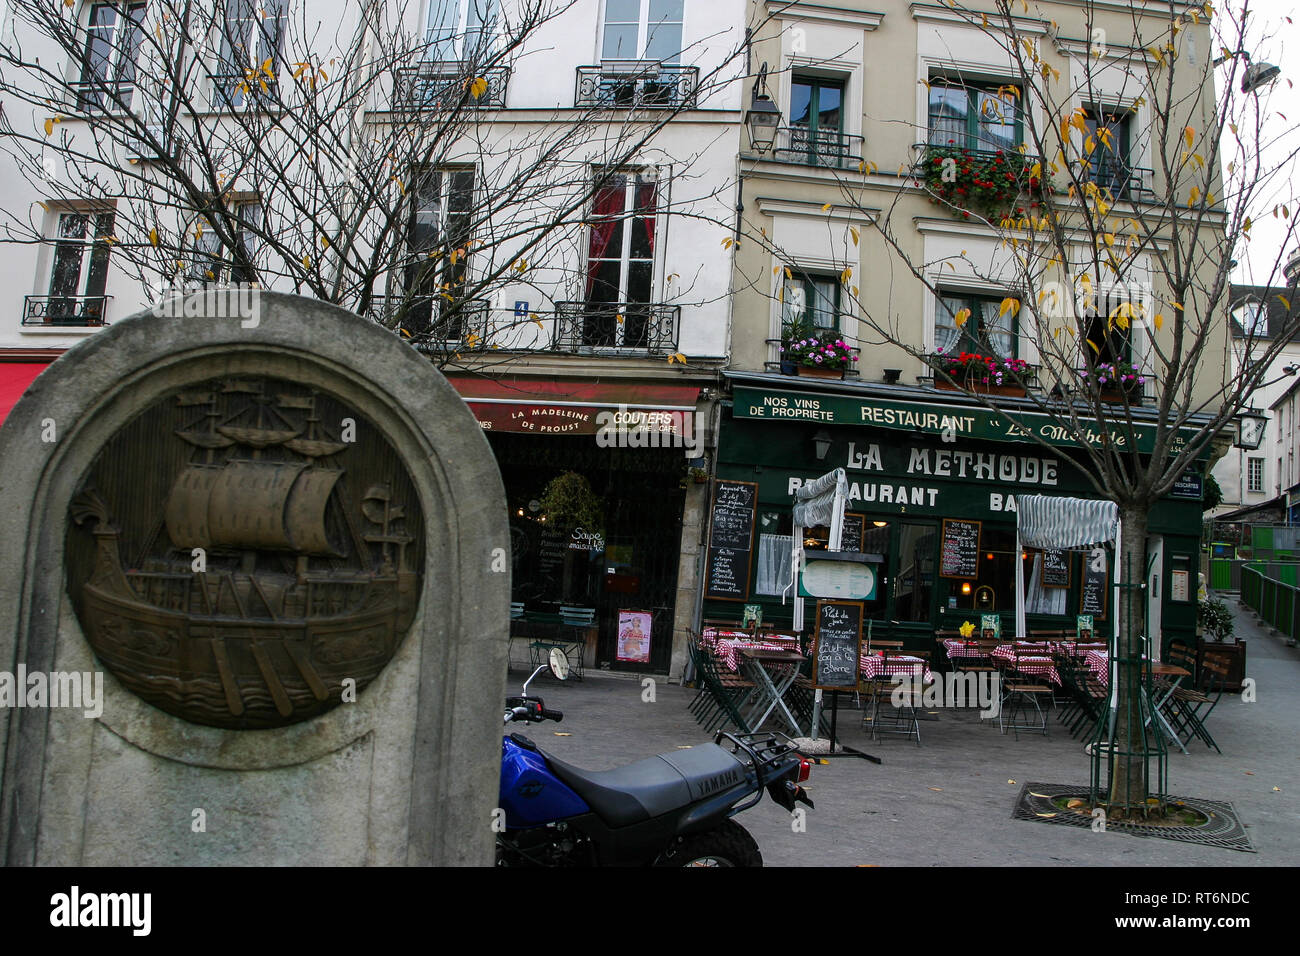 Paris shield, Contrescarpe square, Place de la Contrescarpe, Paris 5th, France Stock Photo